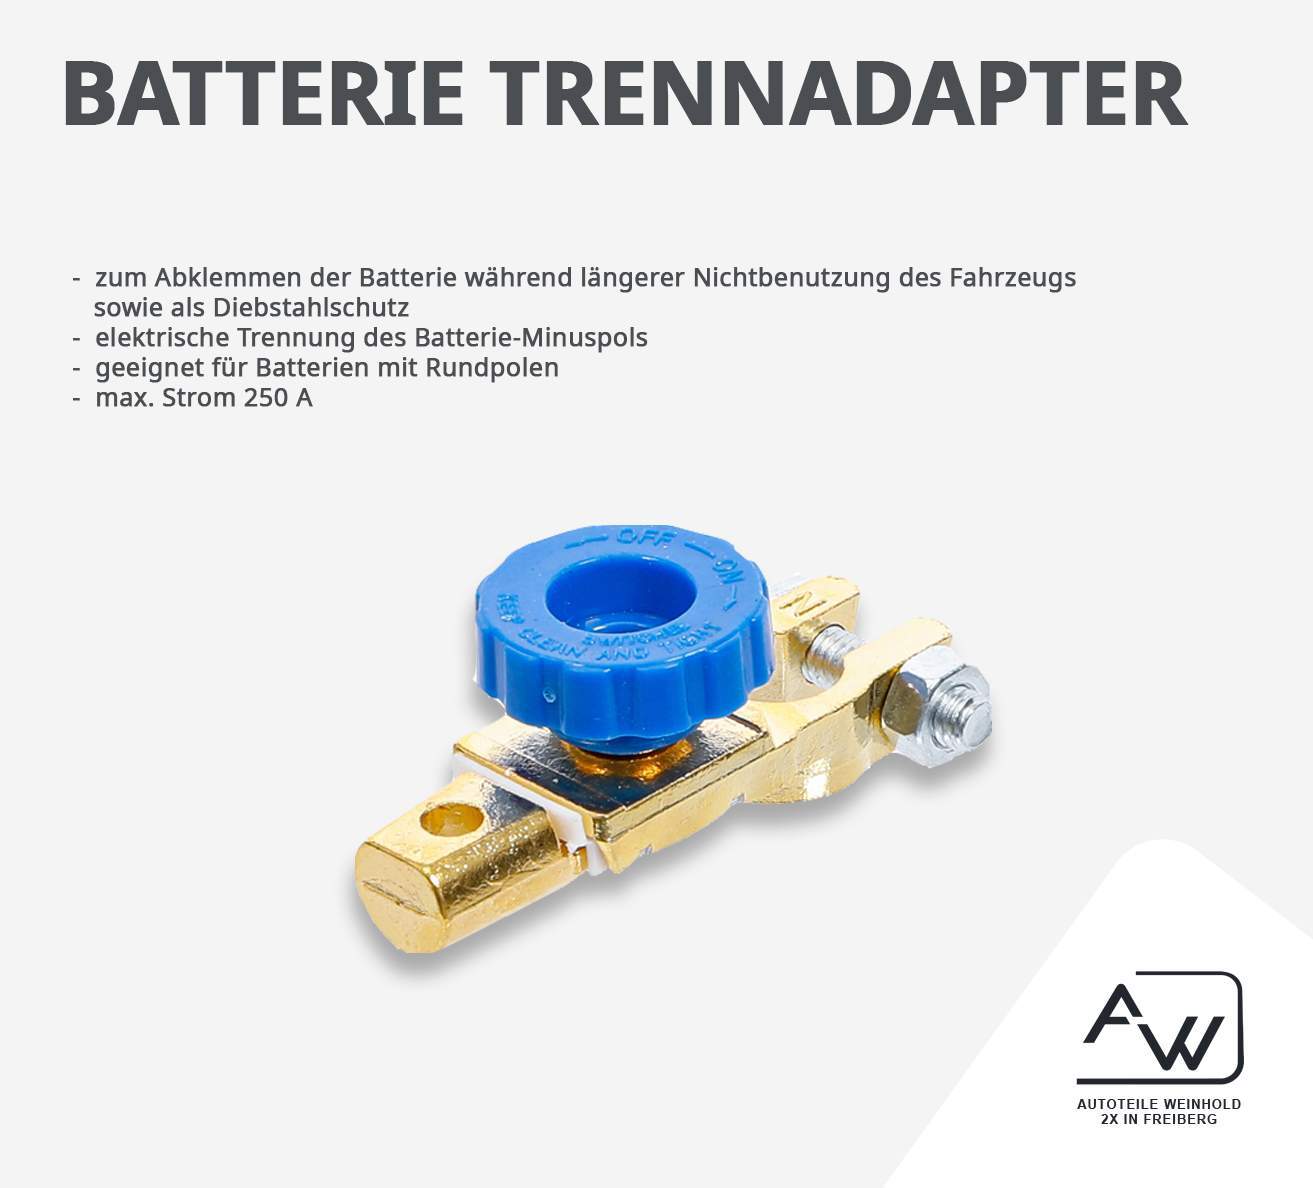 Batterie – Trennadpater